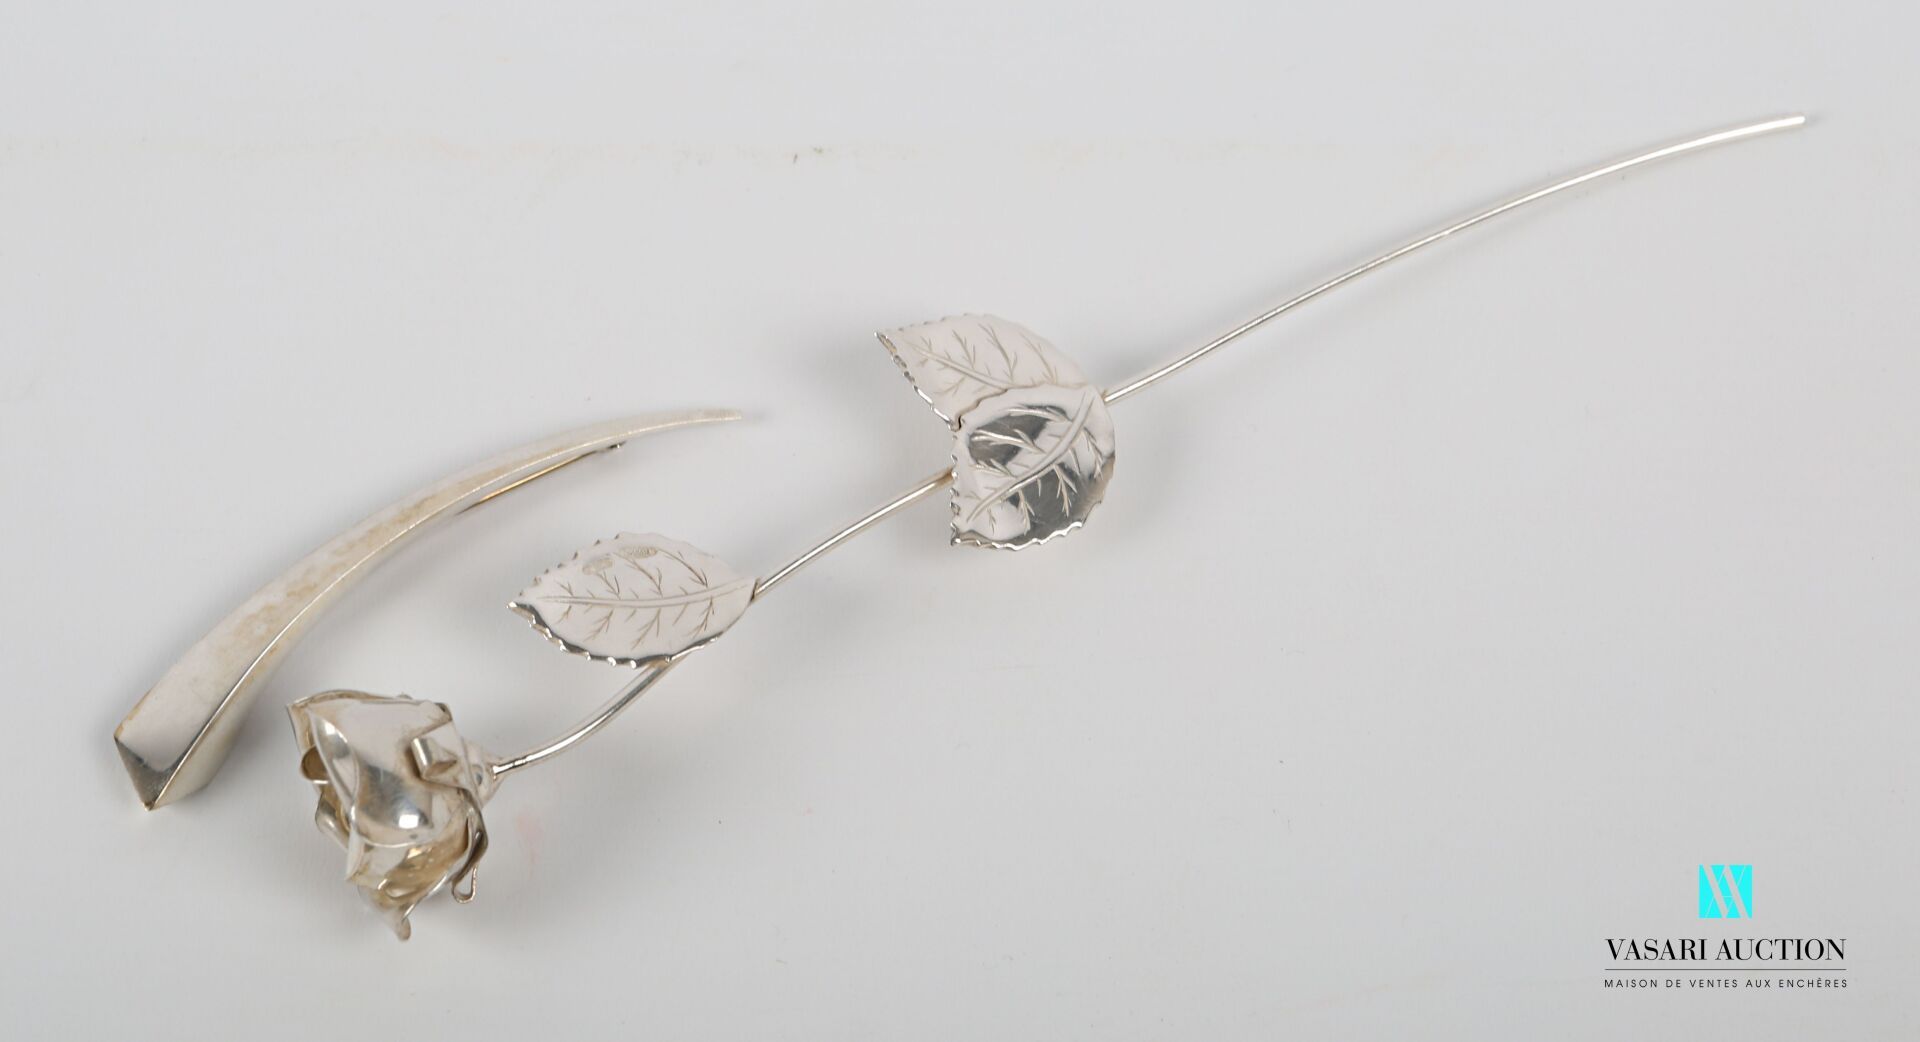 Null 拍品包括银质800千分之一的玫瑰花枝和一枚模拟现代主义形式的新月的胸针。

荷兰

高度：20厘米20厘米（树枝） - 长度：8.5厘米（胸针）